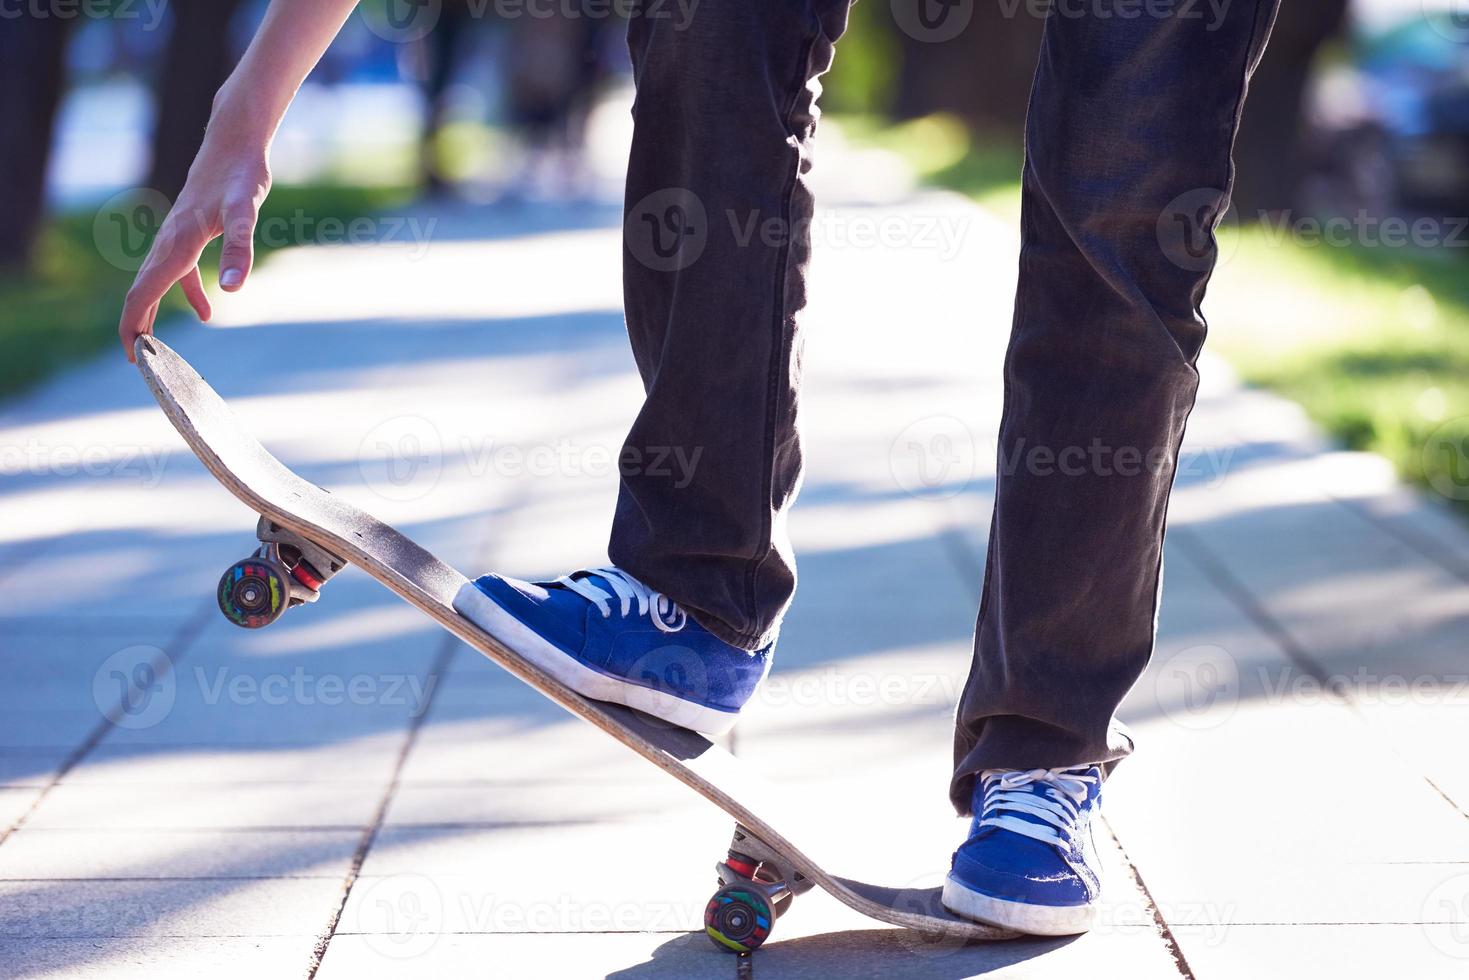 skateboard Hoppar på trottoar foto